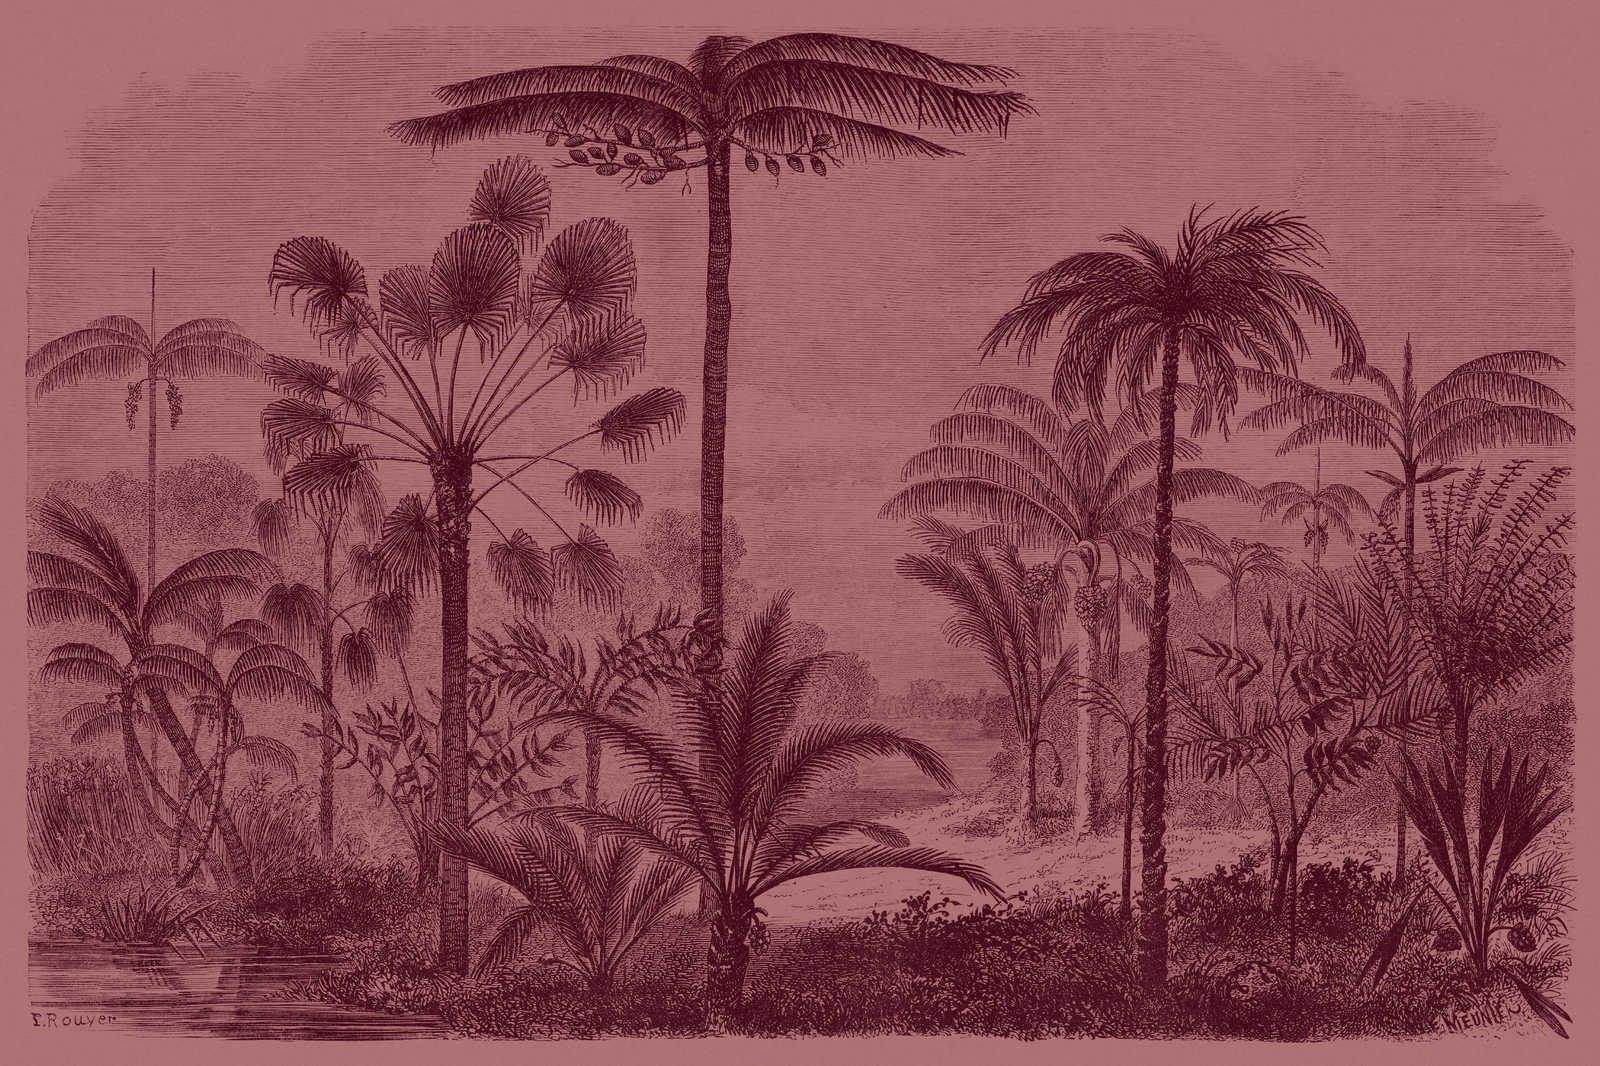             Jurassic 2 - Toile motif jungle gravure sur cuivre - 0,90 m x 0,60 m
        